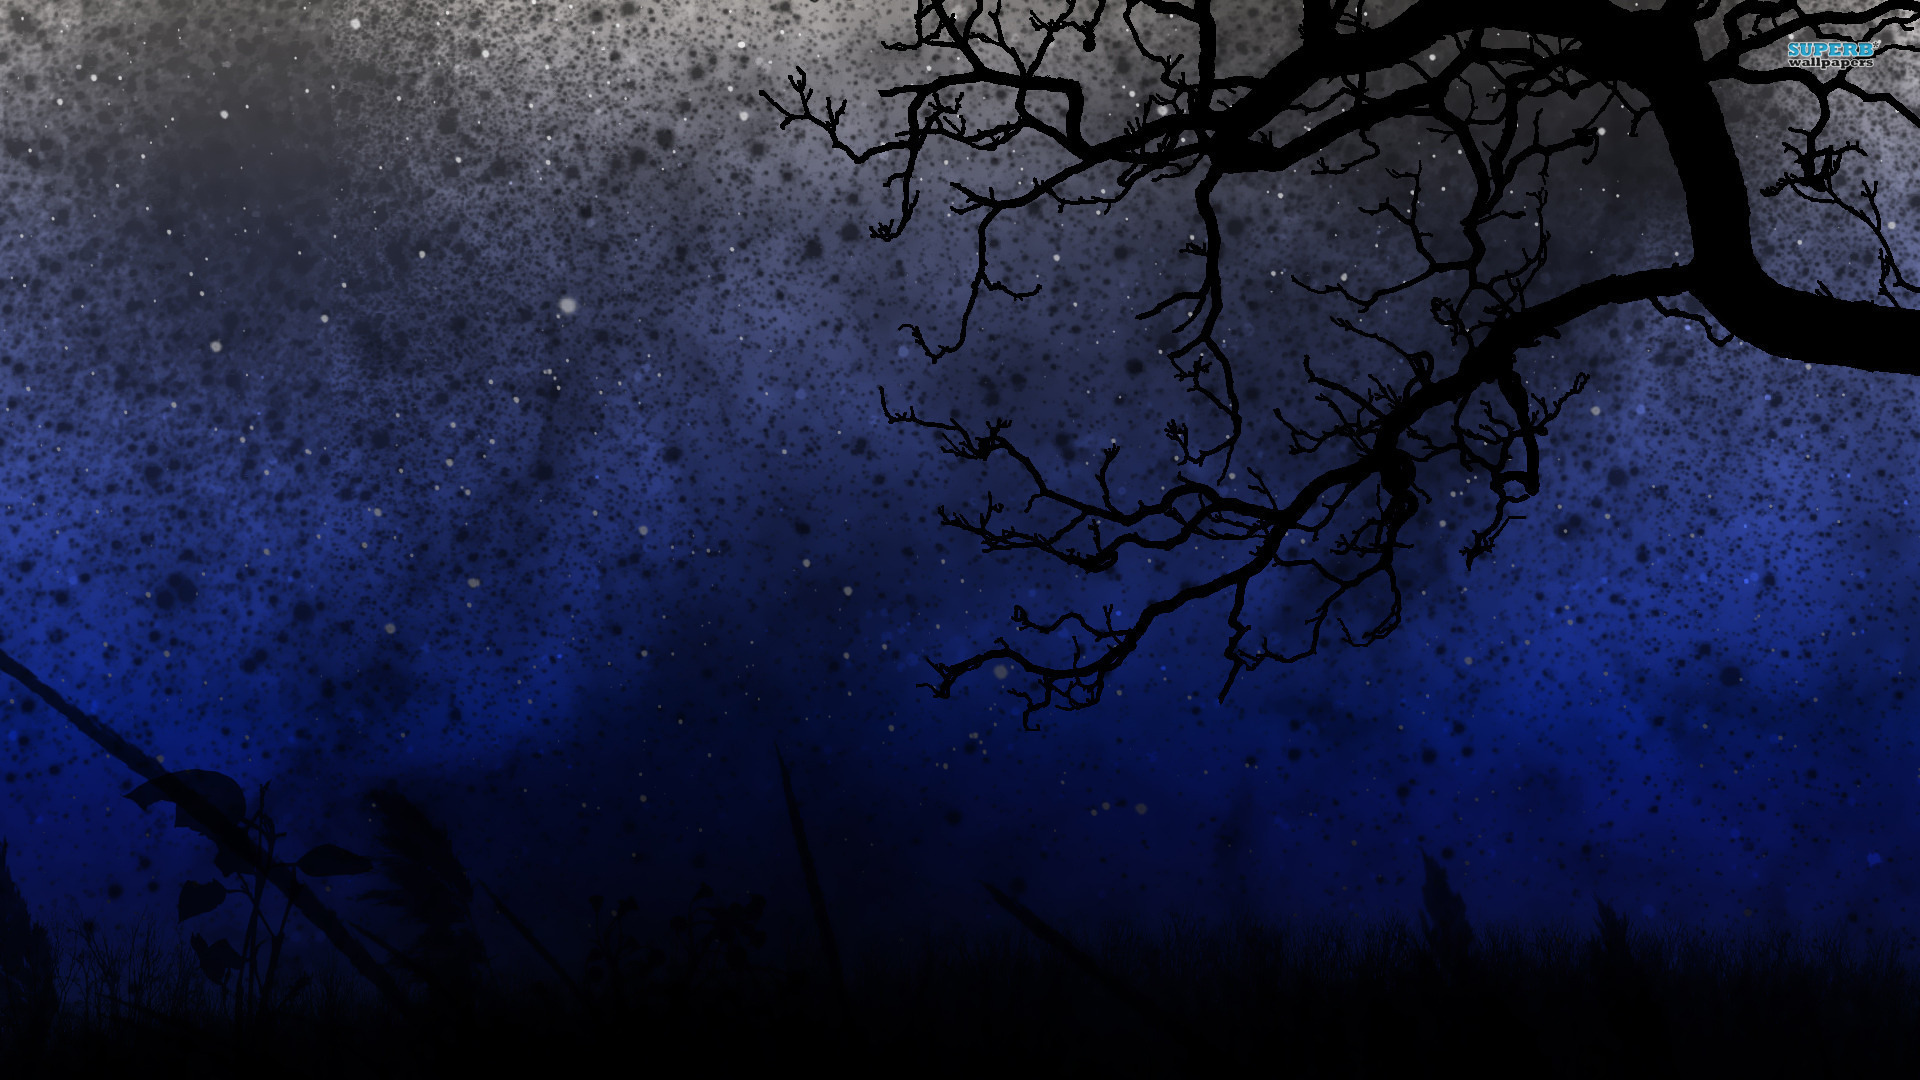 Free HD Starry Night Wallpapers - PixelsTalk.Net